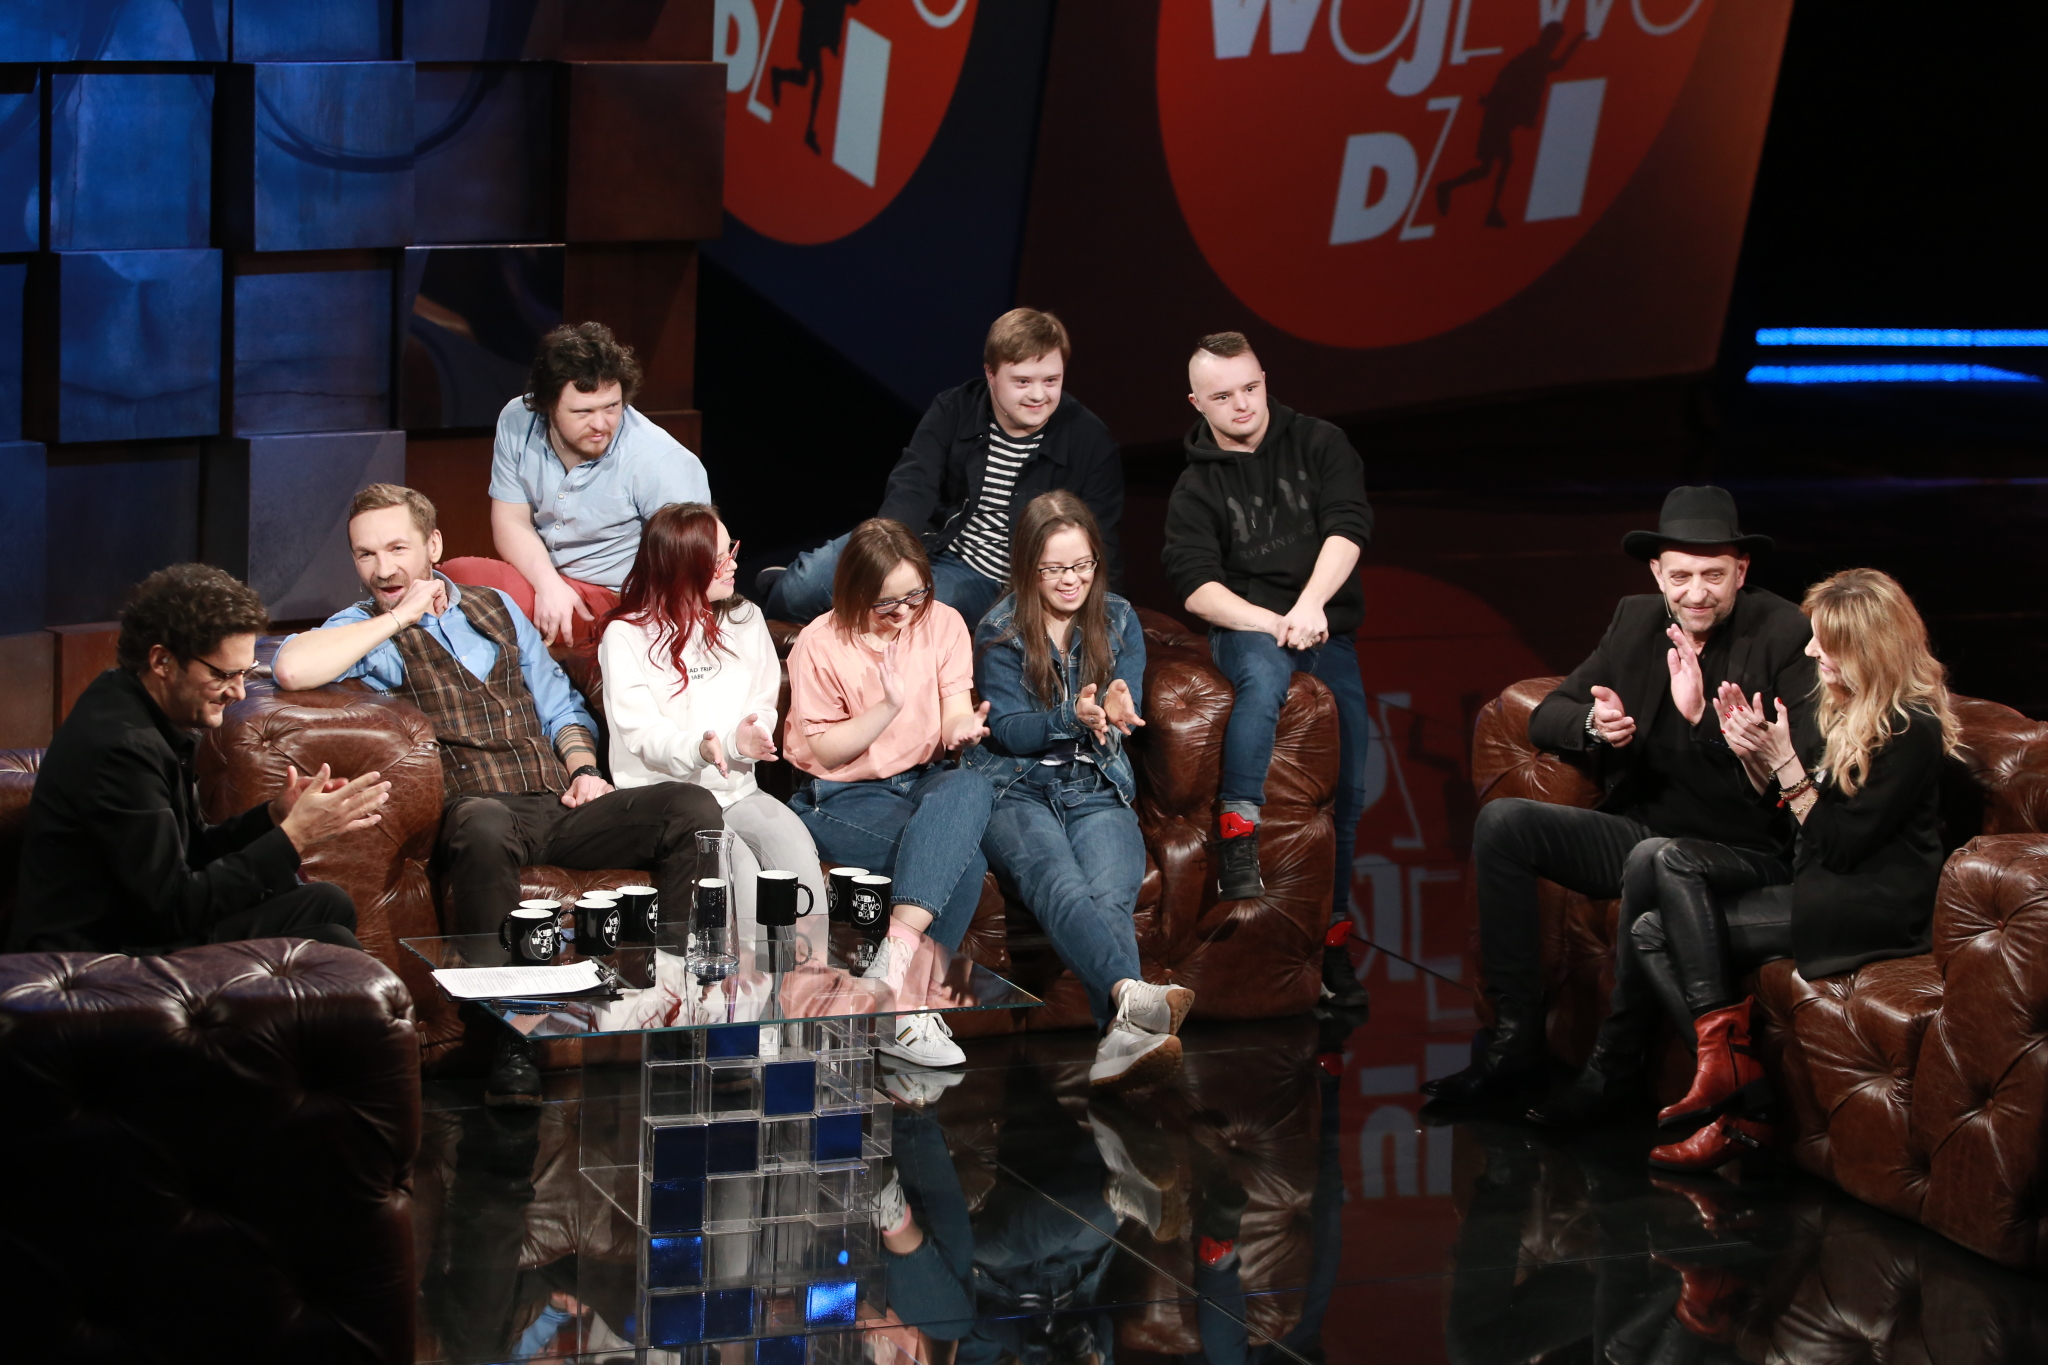 Kuba Wojewódzki: Agata Wątróbska, Janusz Chabior, Przemek Kossakowski oraz bohaterowie programu "Down the road 2"